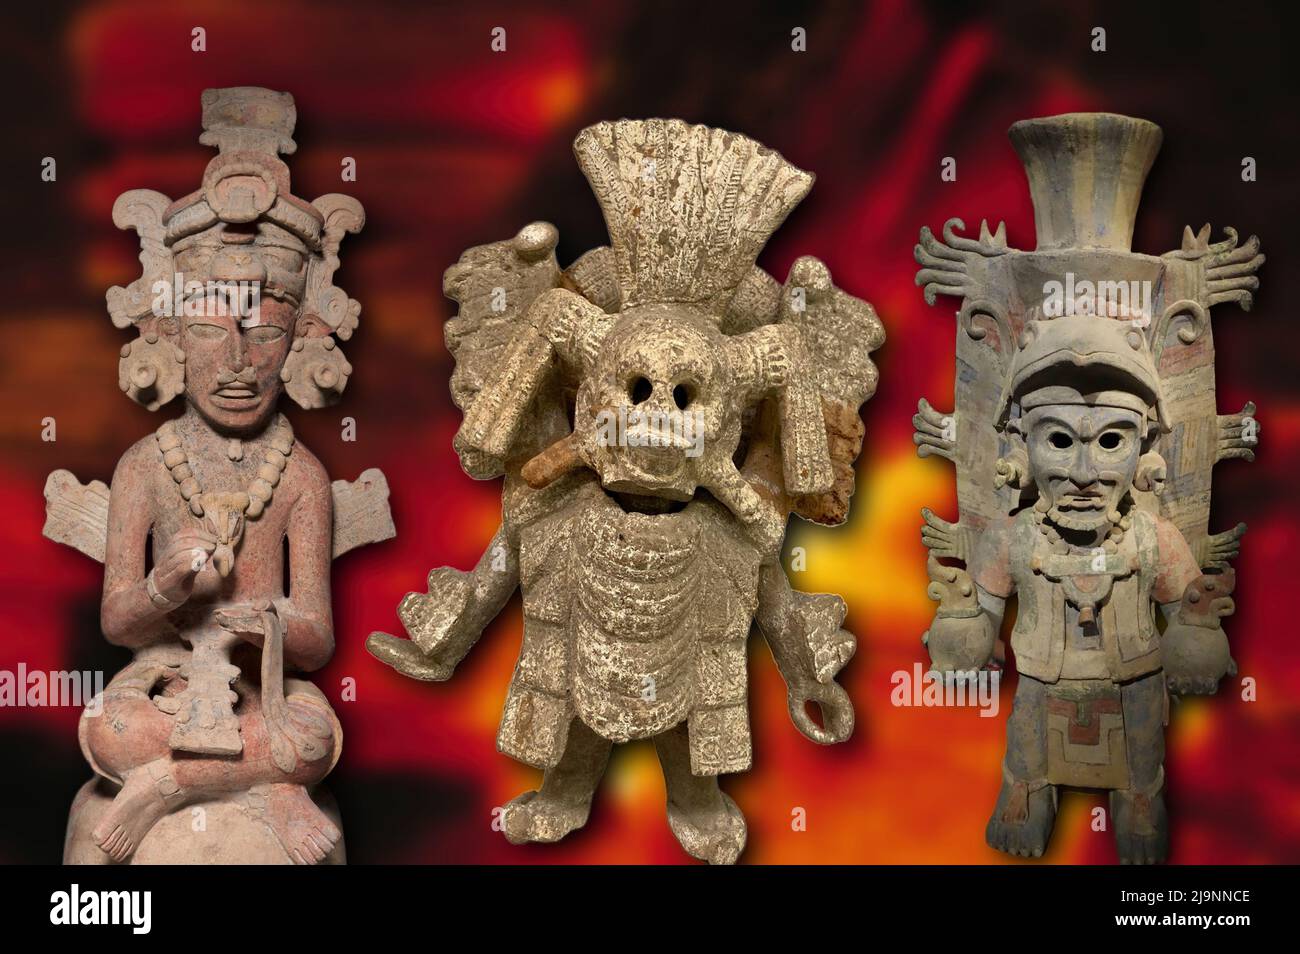 Human sacrifice aztec hi-res stock photography and images - Alamy